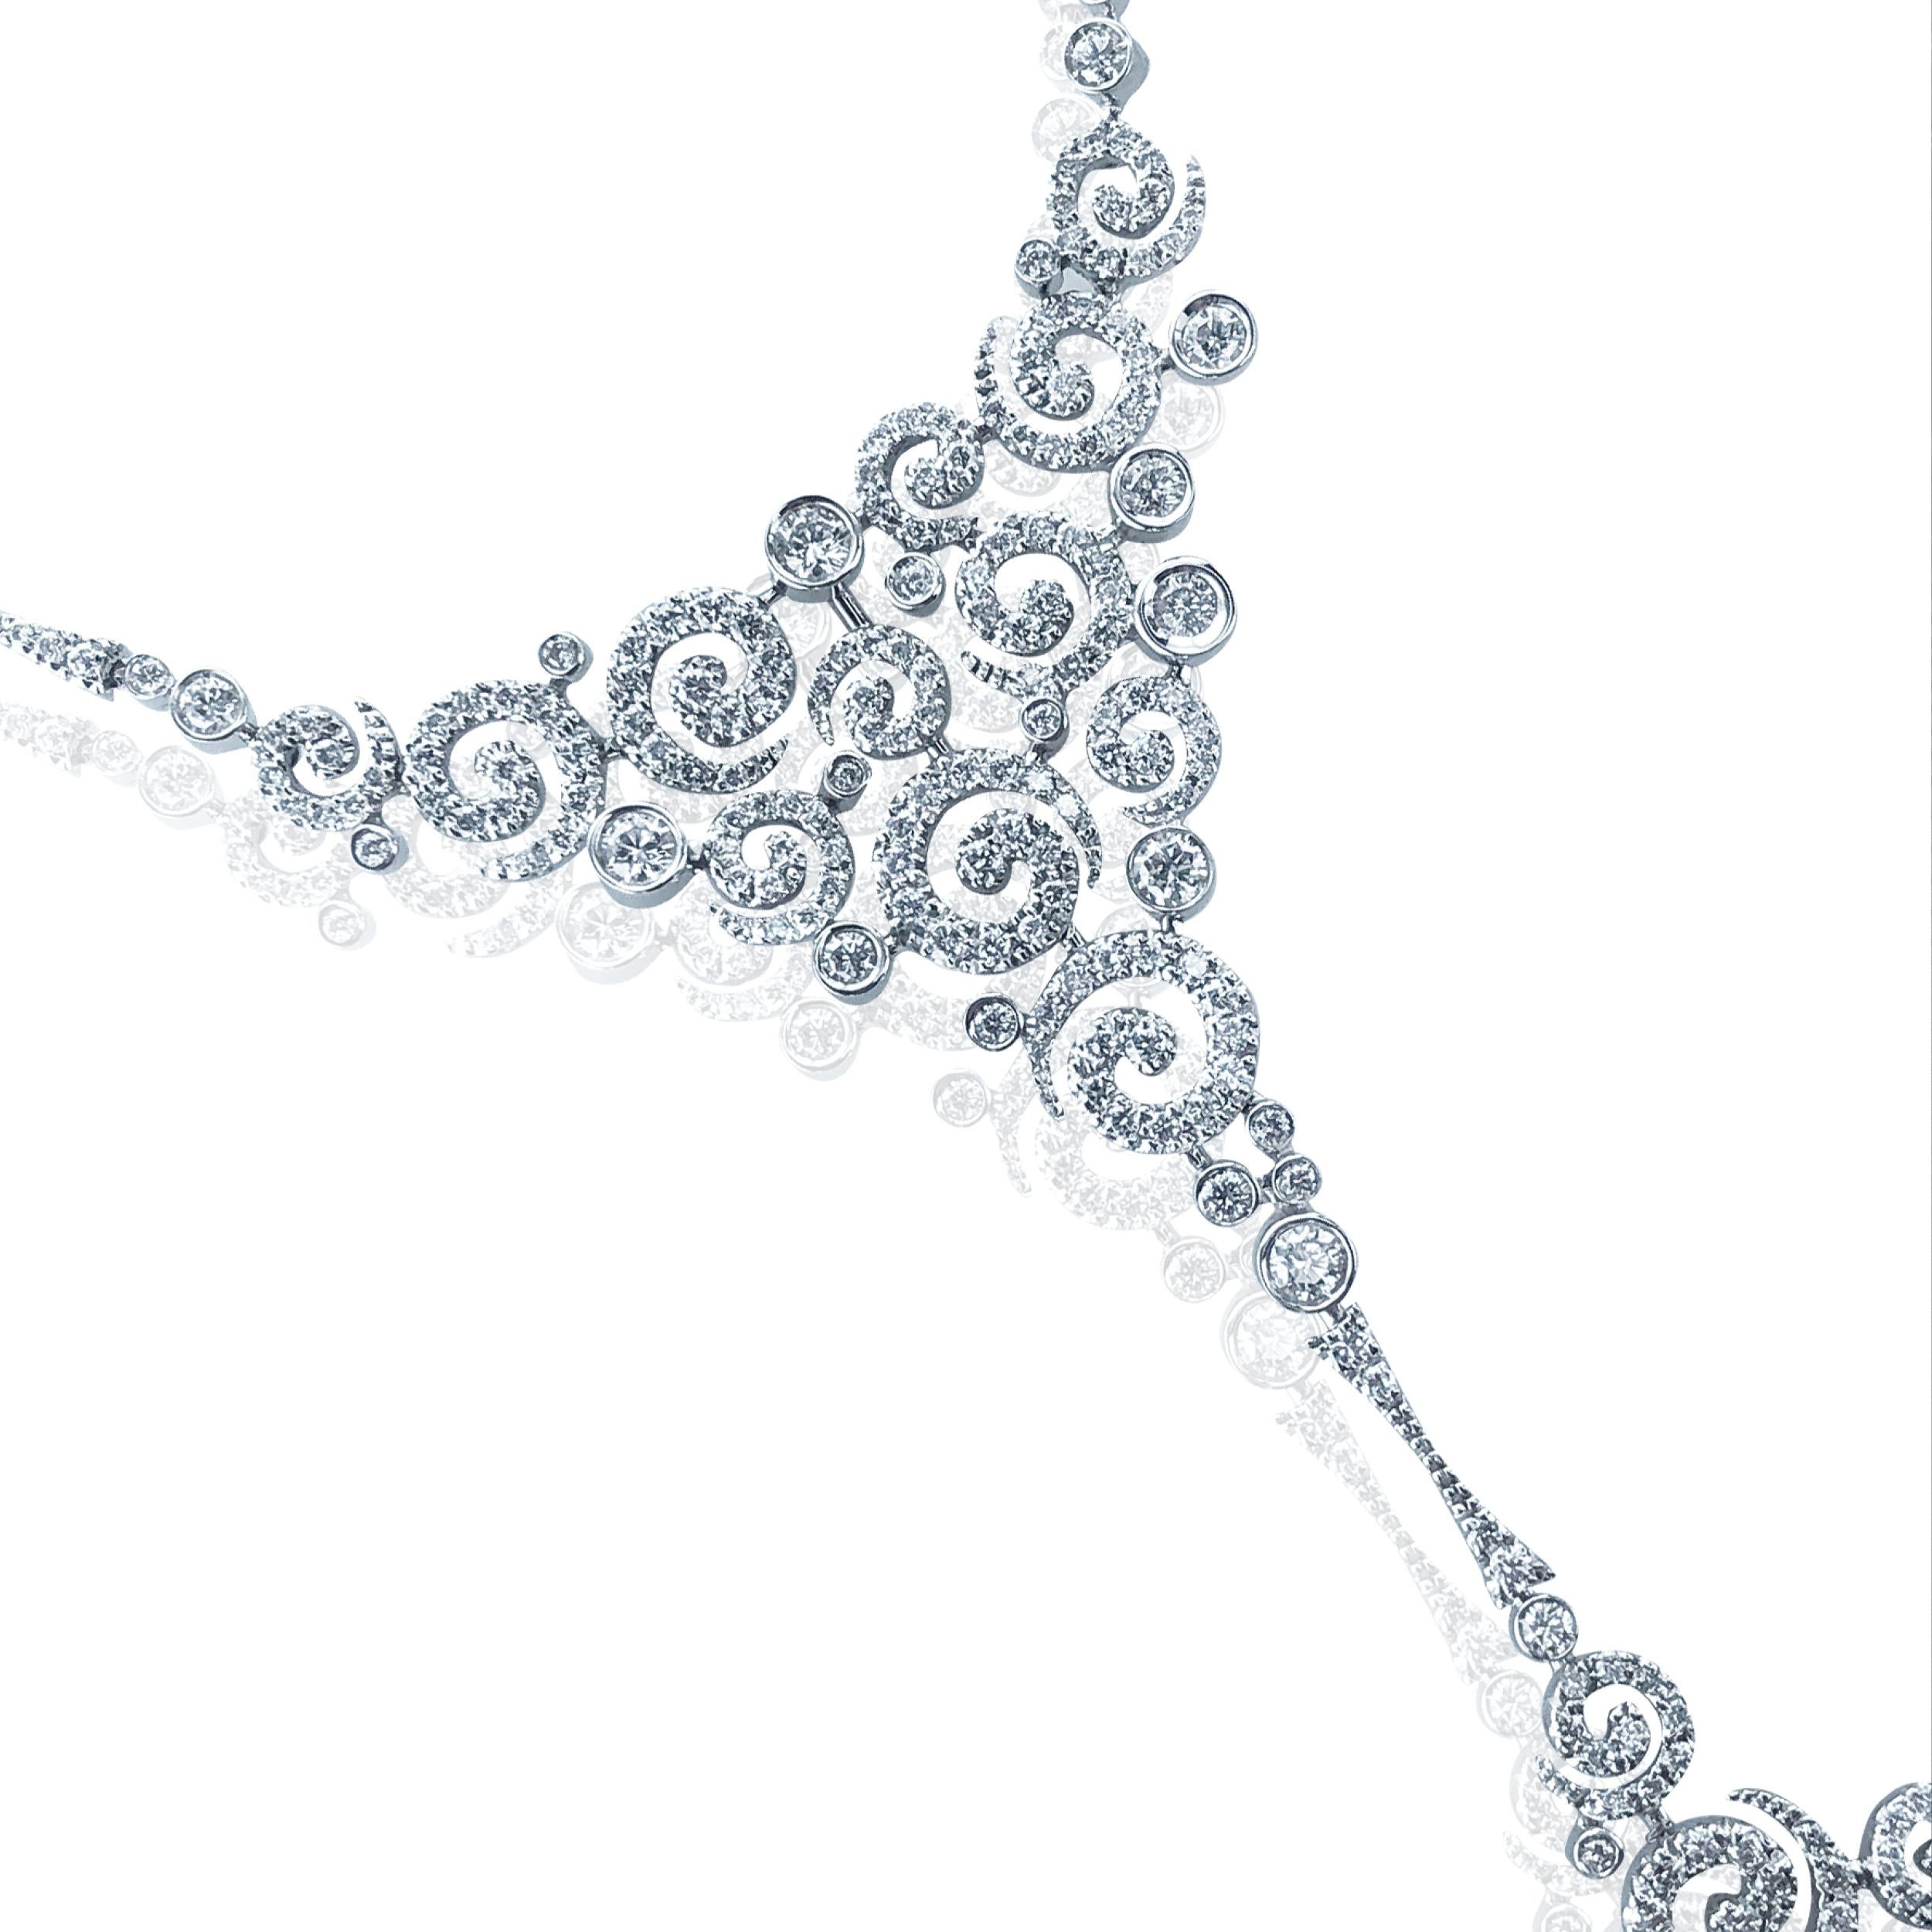 Ce collier à large tourbillon de diamants de 3,00 carats est magnifiquement monté sur une chaîne câblée en or blanc 18 carats. 

Avec une pièce centrale fixe composée de multiples tourbillons de diamants, menant à une collection de tourbillons